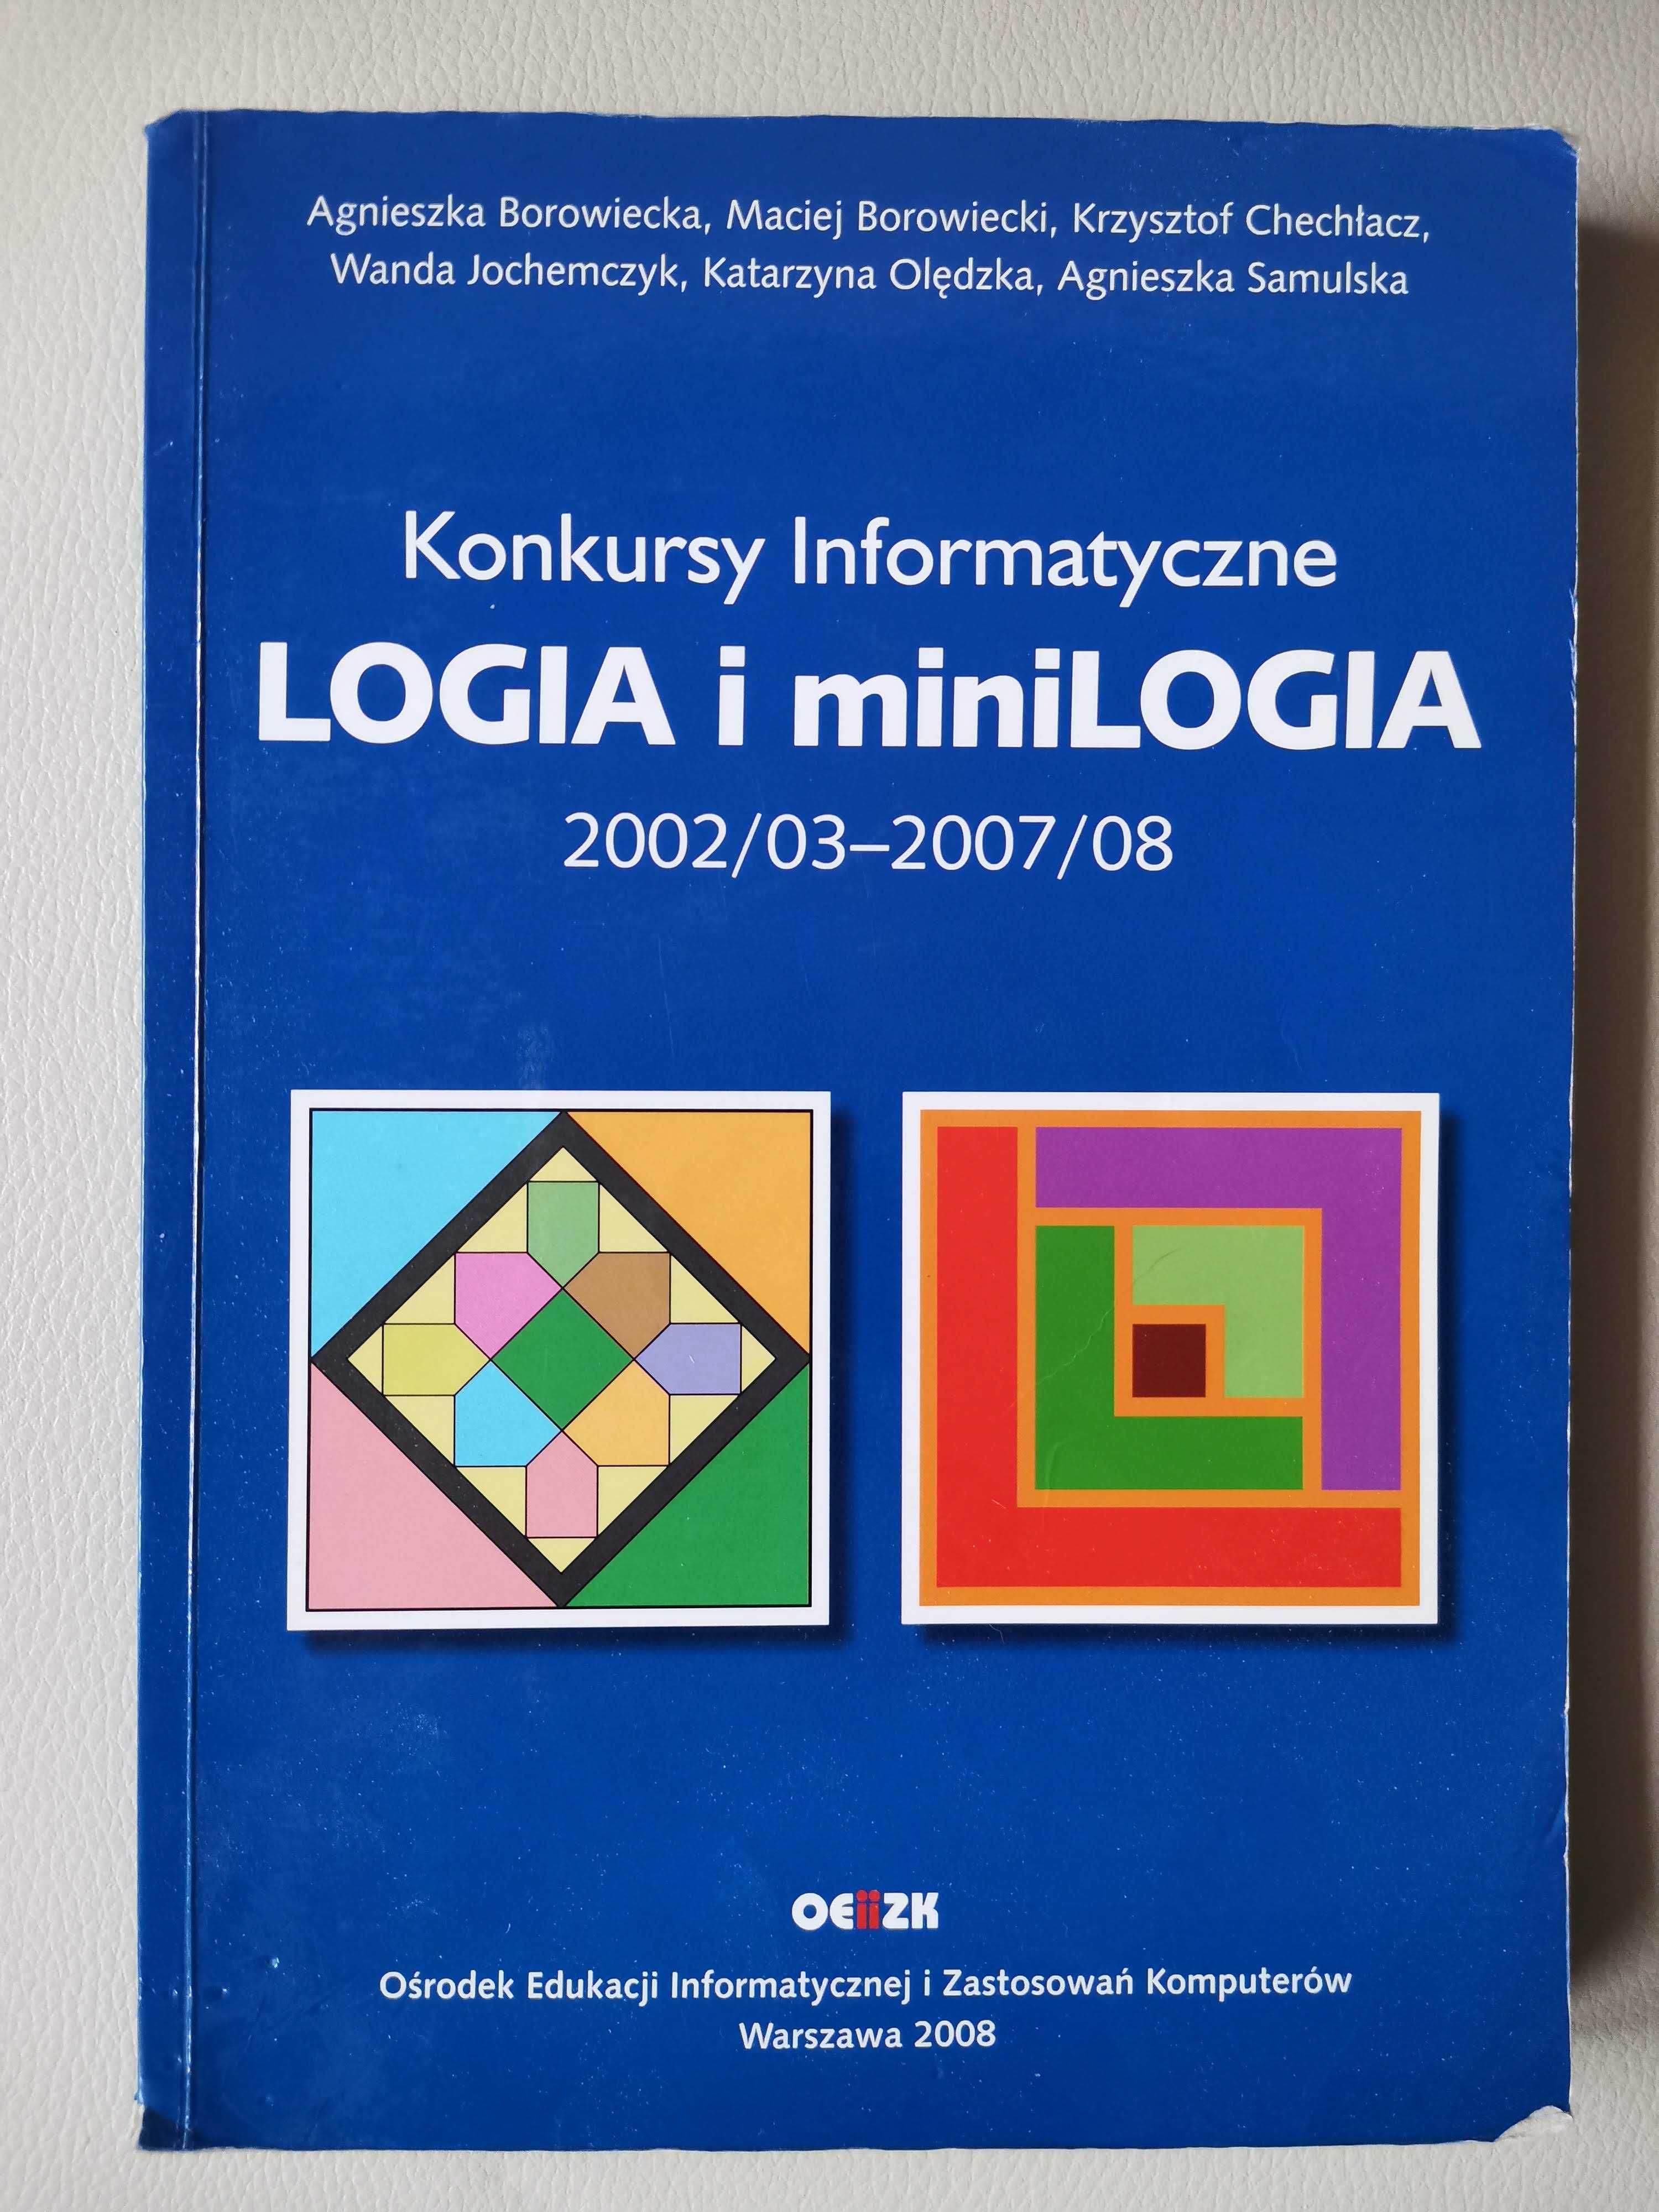 Logia i miniLOGIA konkursy informatyczne 2008